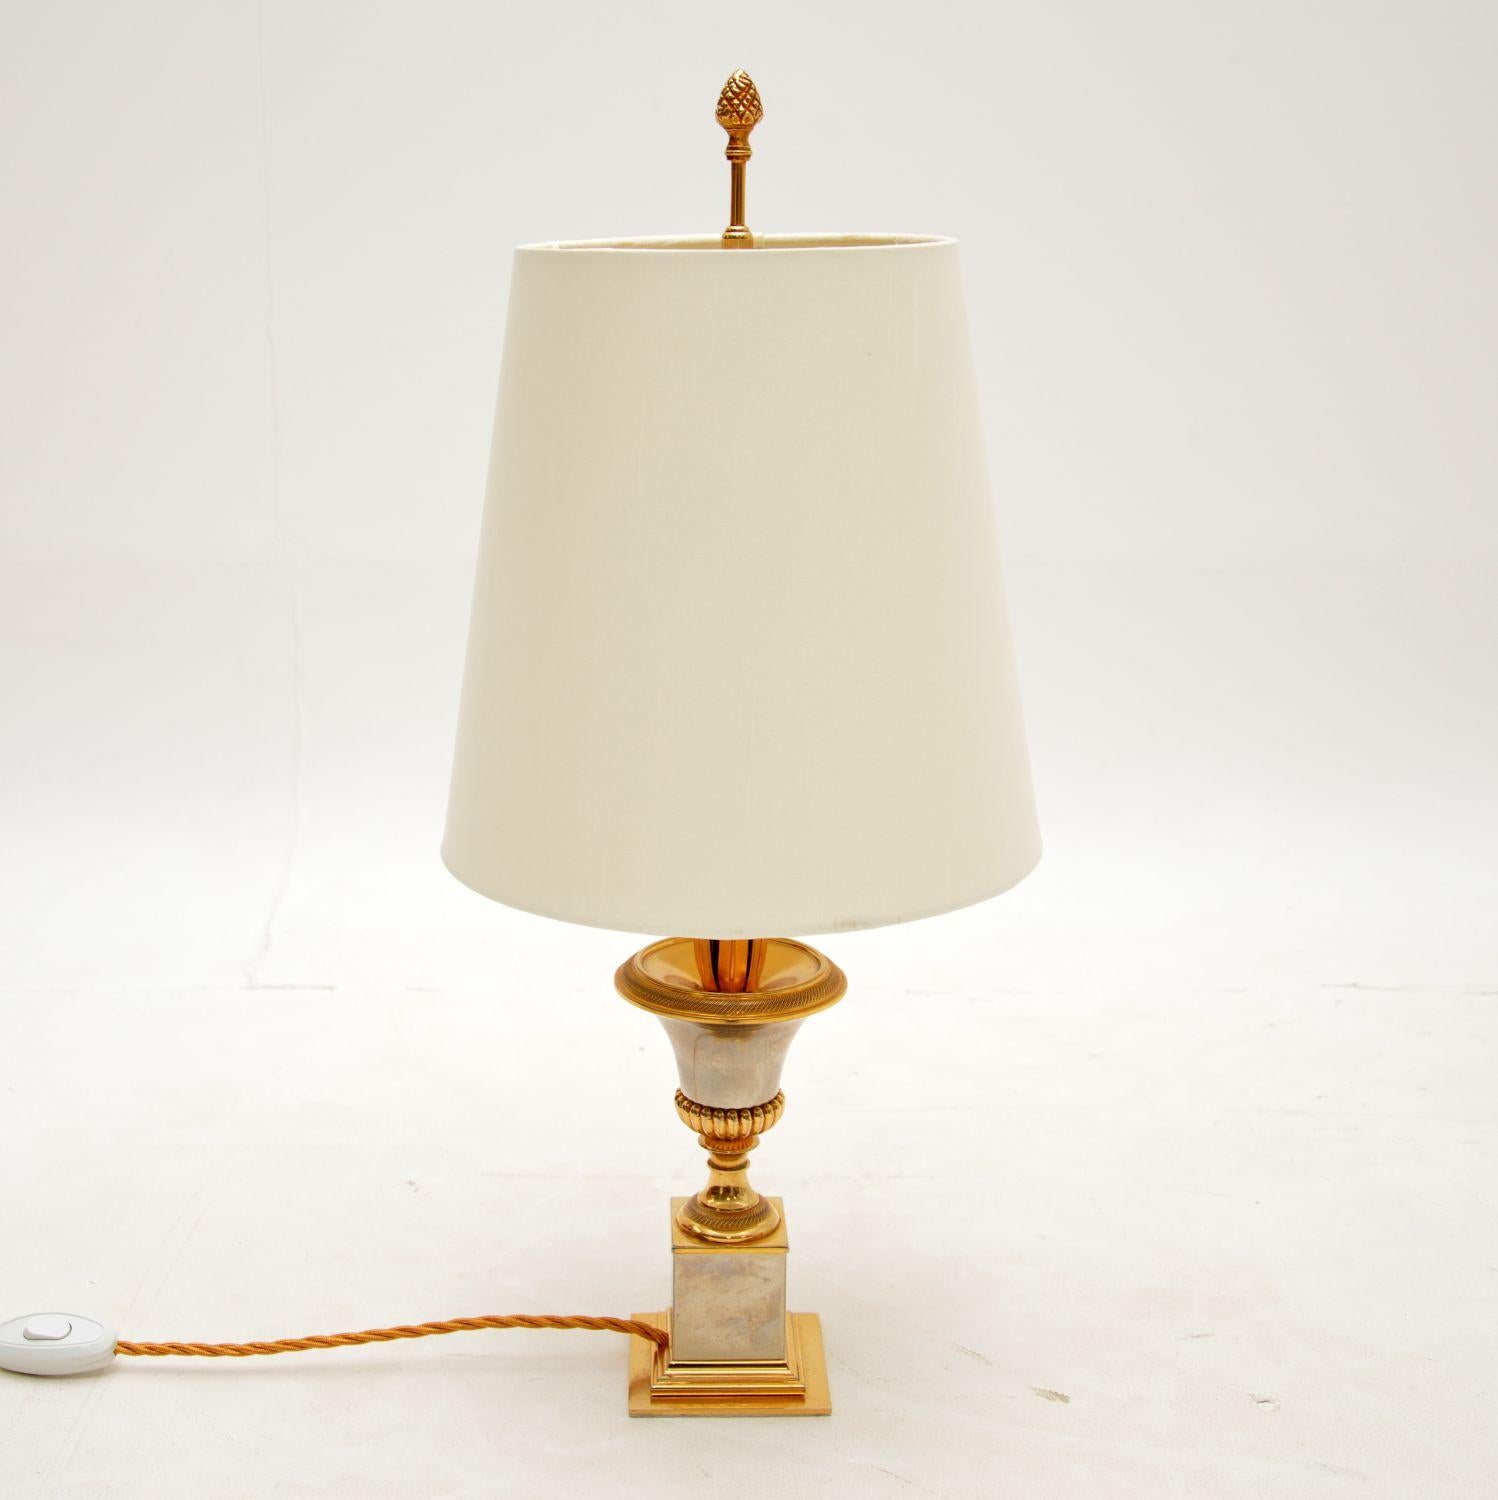 Une belle lampe de table vintage en laiton, fabriquée en France dans les années 1960.

Ce produit est d'une qualité exceptionnelle et son design est absolument magnifique. Il est fini en laiton et chrome, avec une base en forme d'urne, des